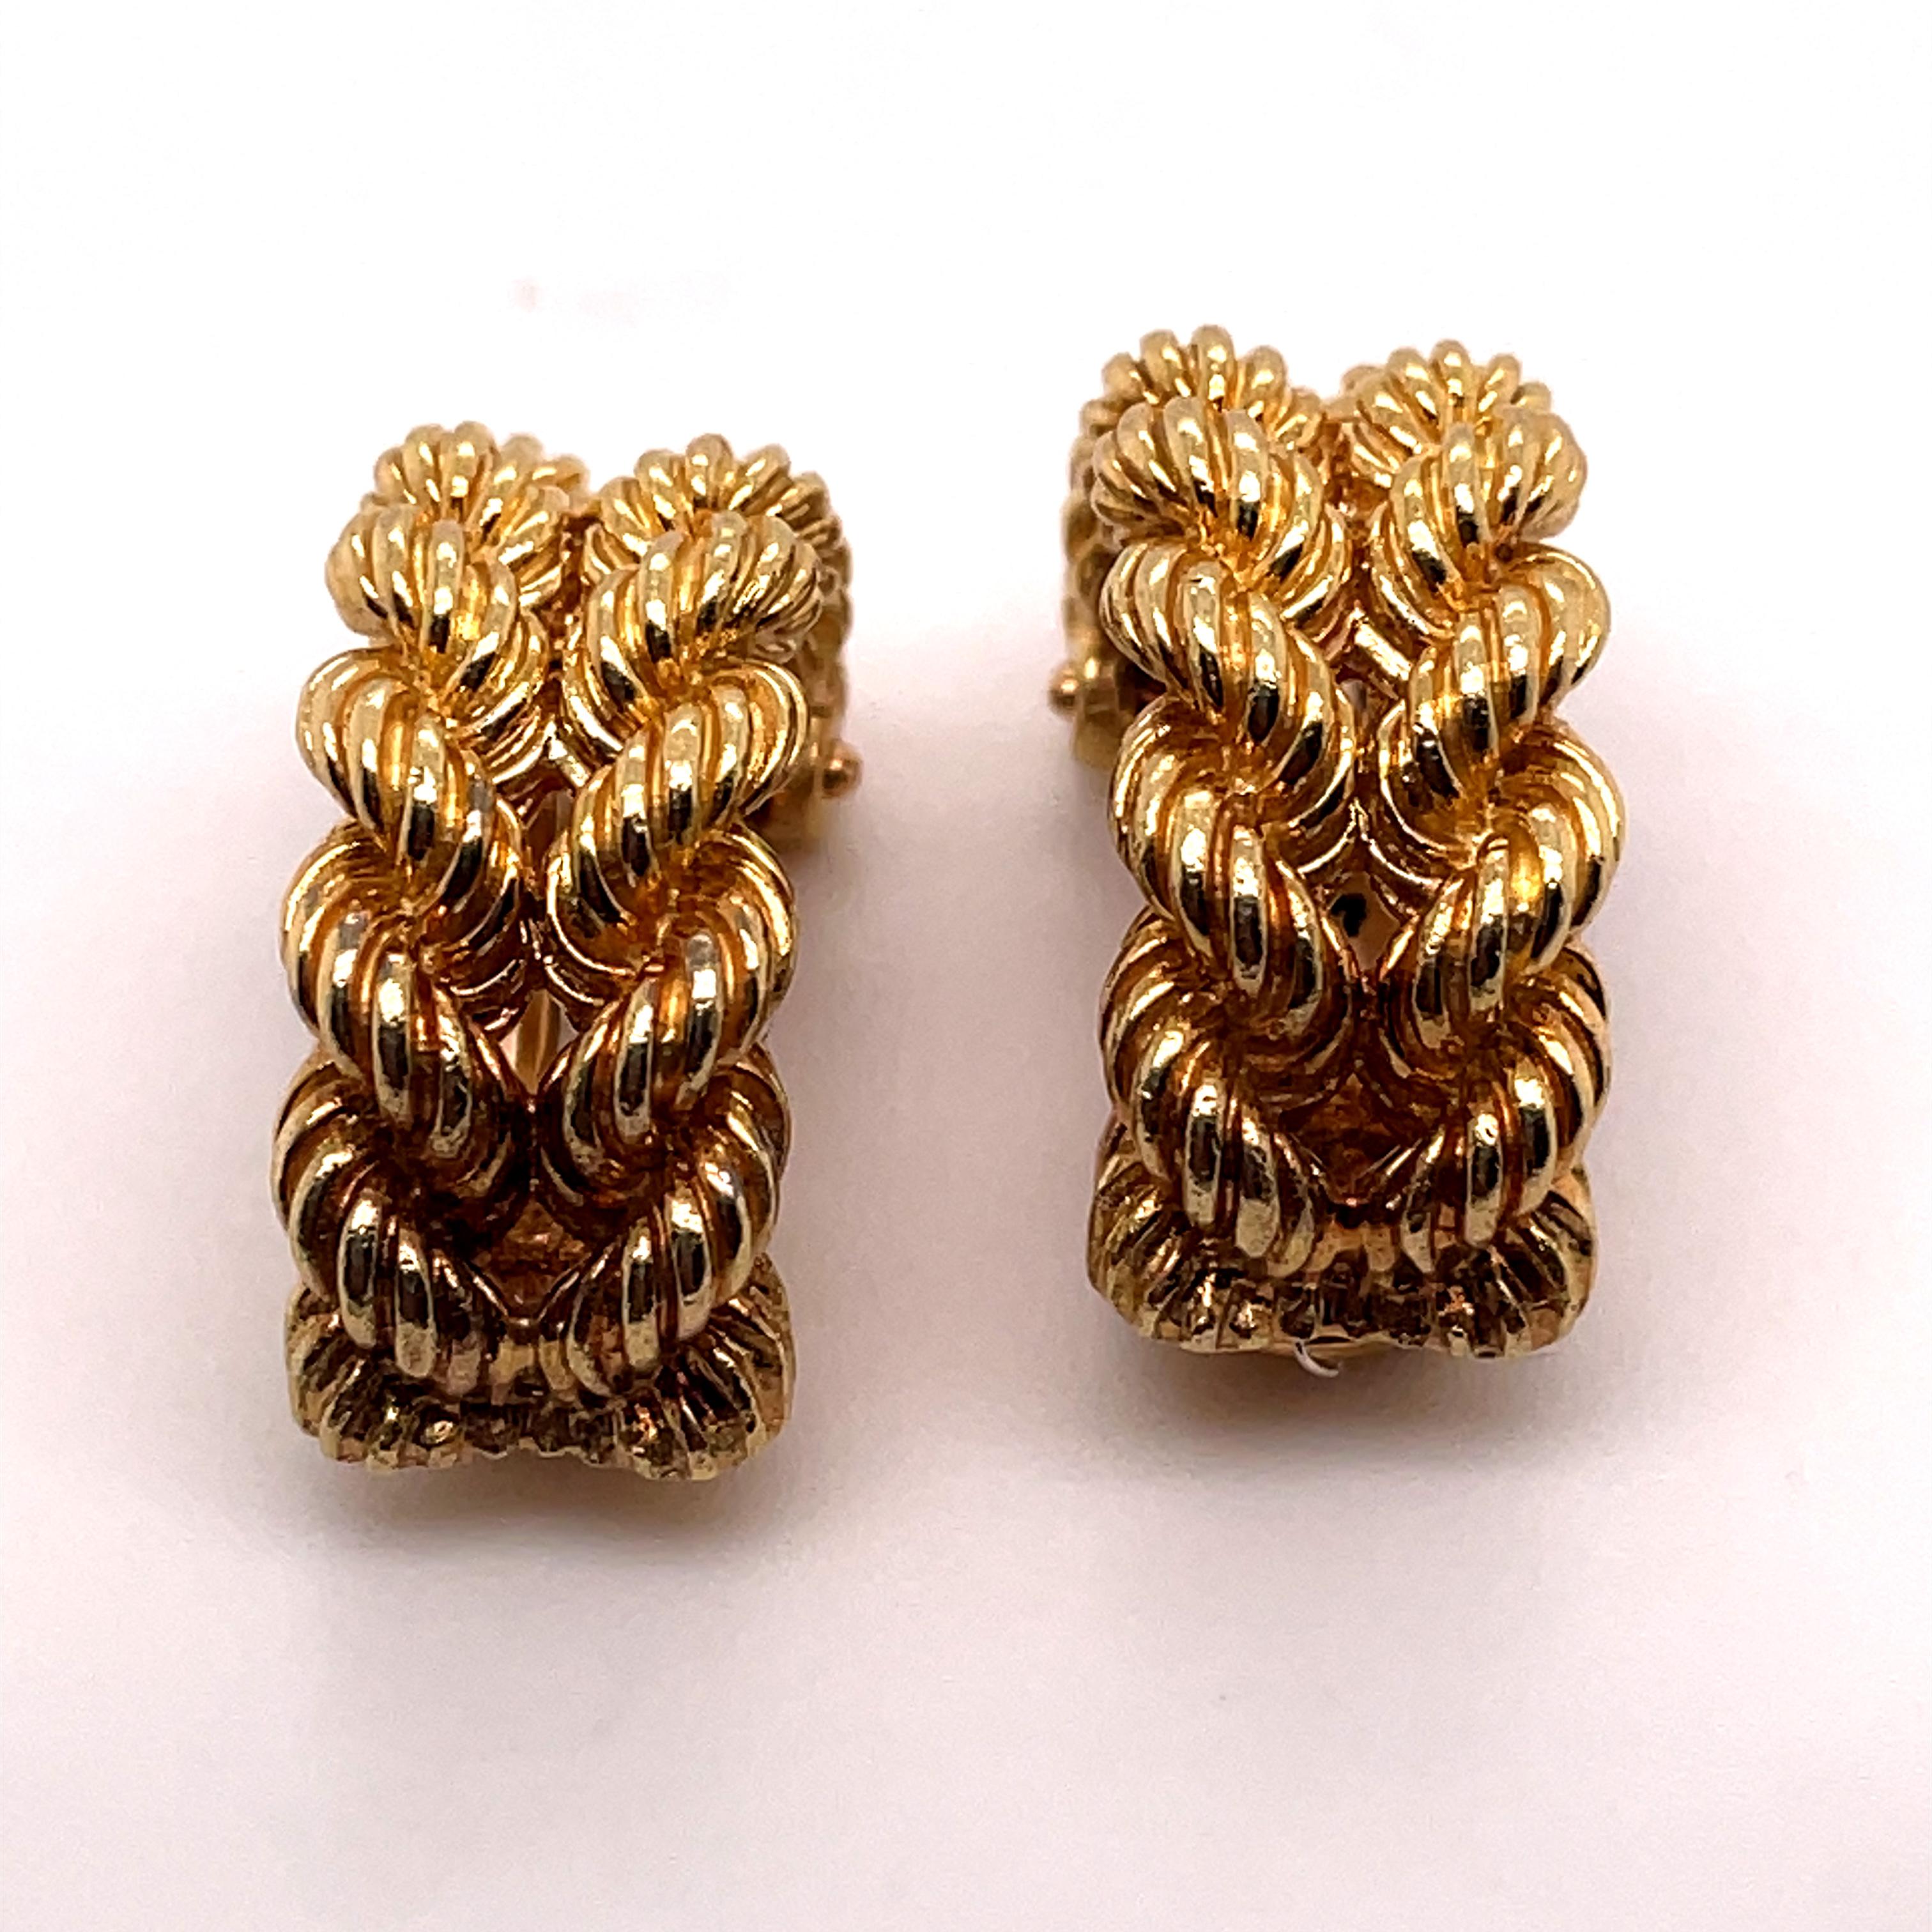 Paire de boucles d'oreilles Hermès en or jaune 18 carats, circa 1960.

Chaque boucle d'oreille vintage est conçue comme une double rangée d'or poli finement torsadé. Ils sont fixés à l'envers par des raccords à clip. 

Grâce à leur conception et à